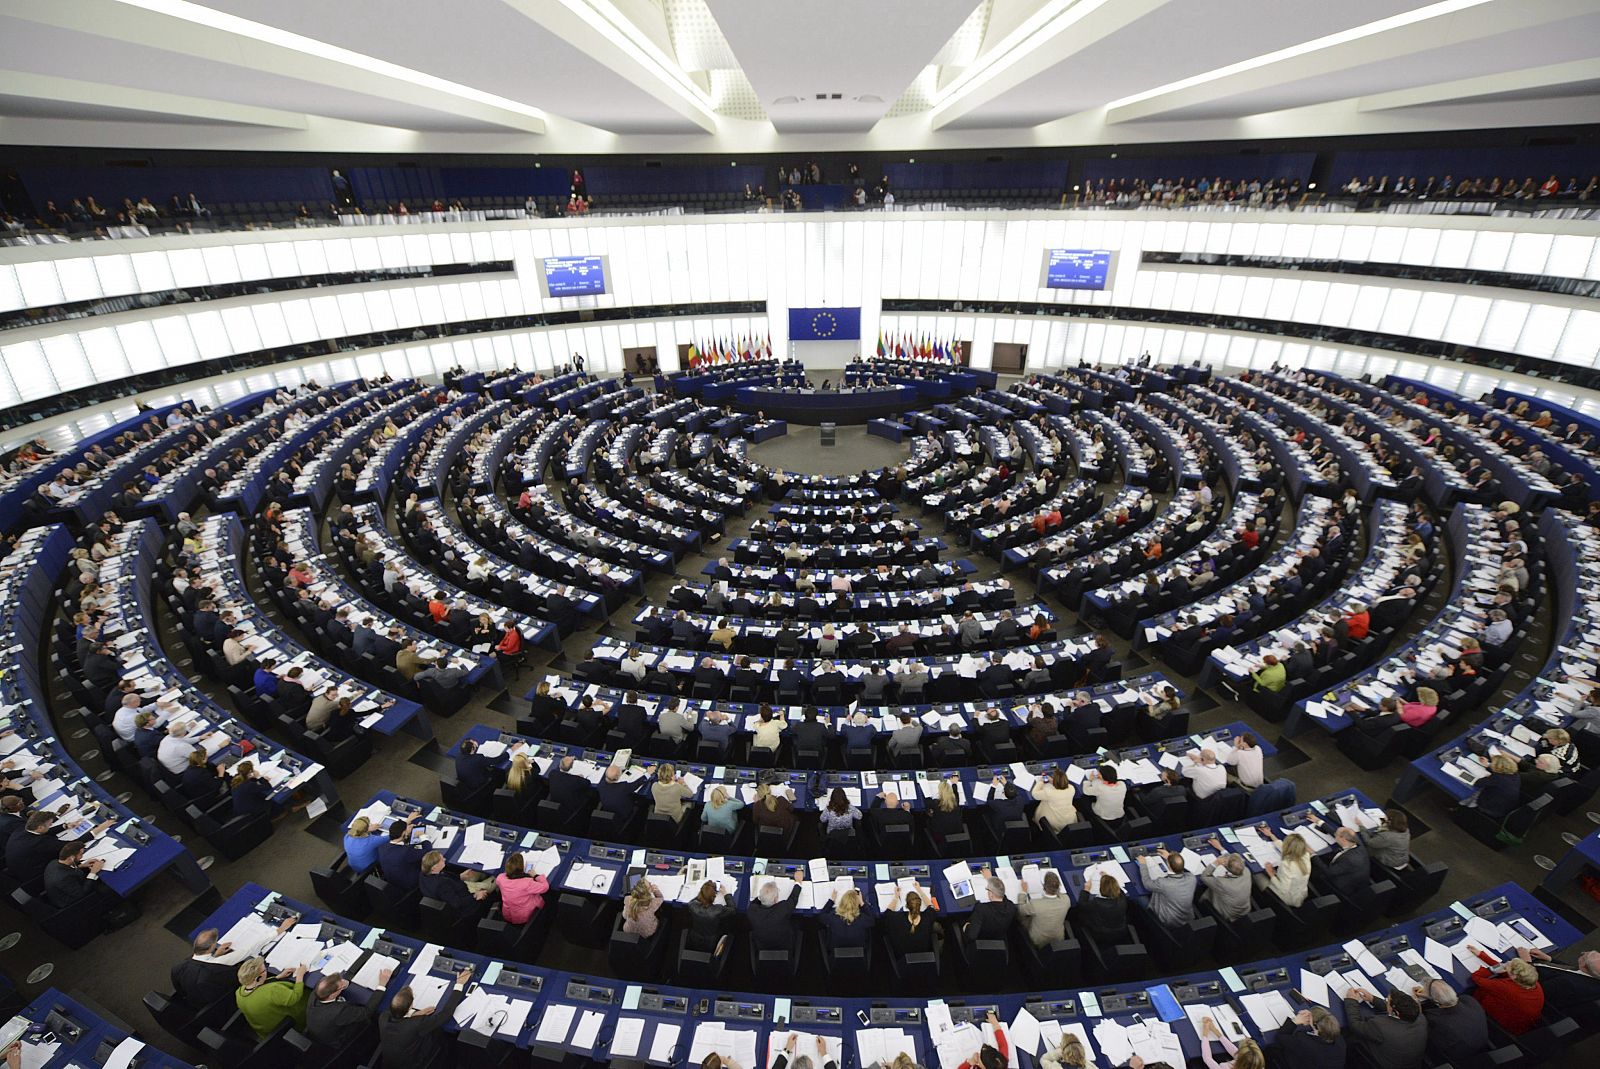 Vista general de una sesión plenaria en el hemiciclo del Parlamento Europeo, en Estrasburgo